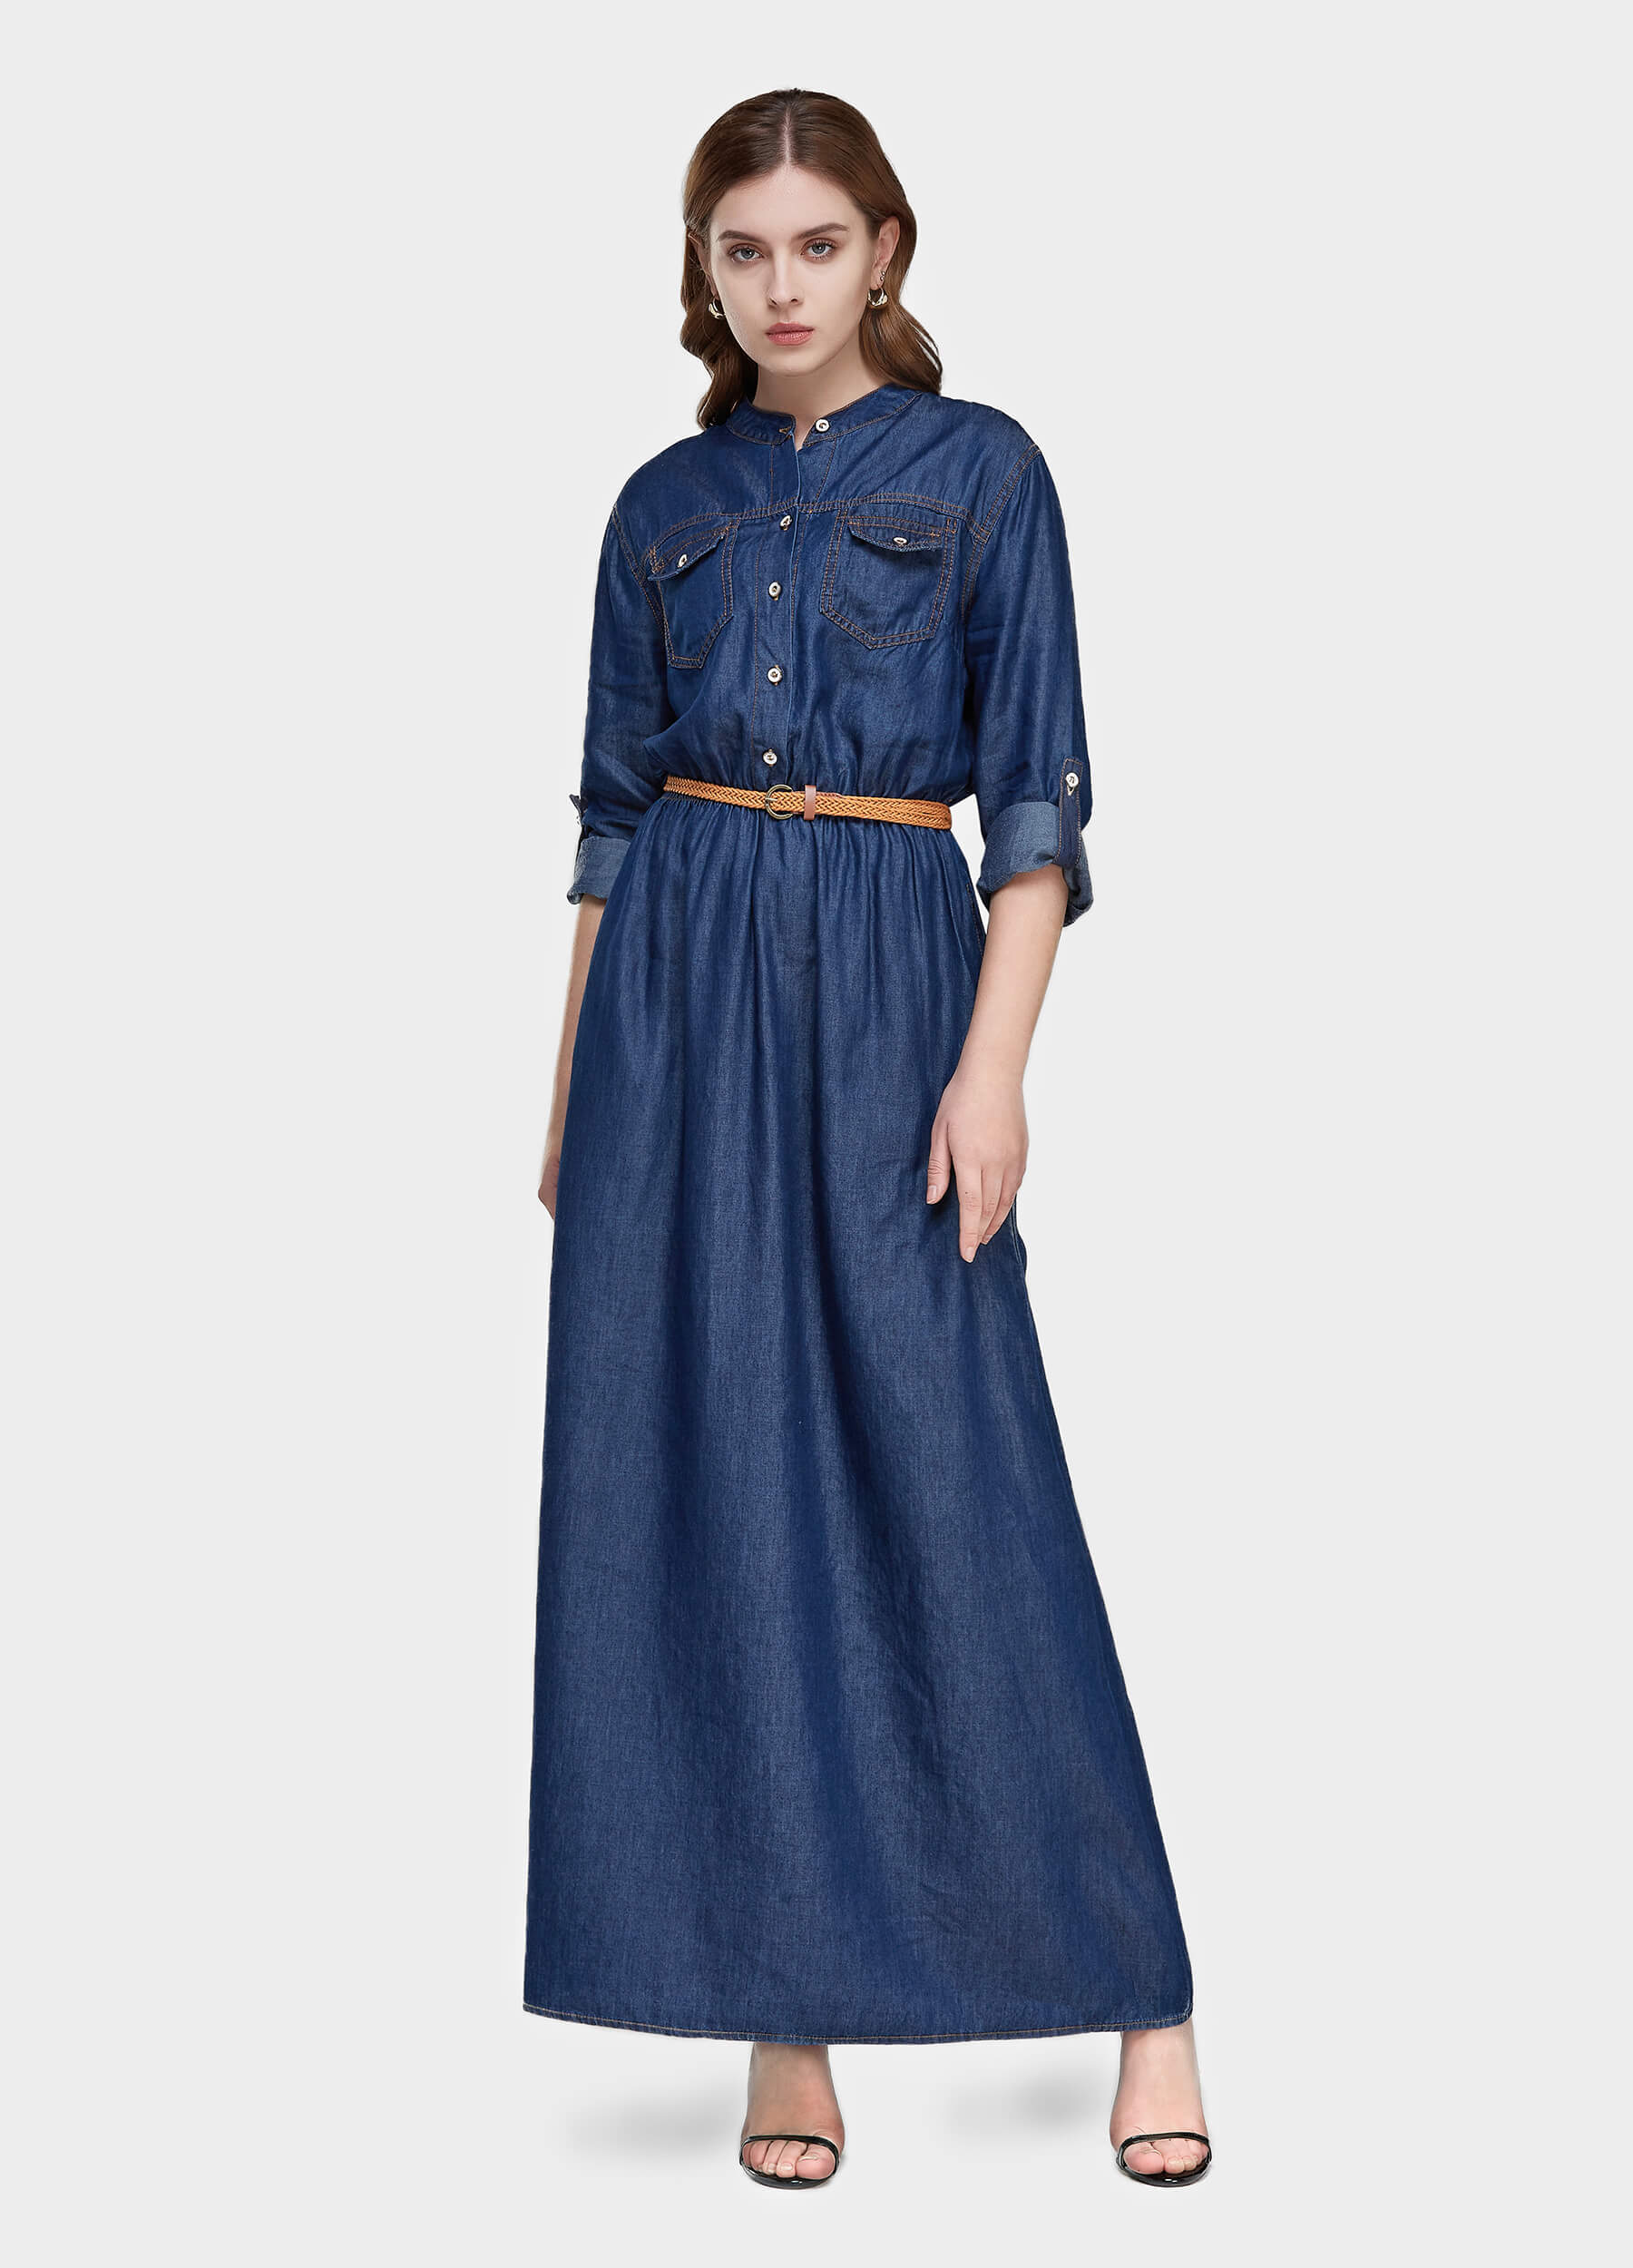 Women's Long Sleeve Denim Shirt Dress-Mid Blue main view